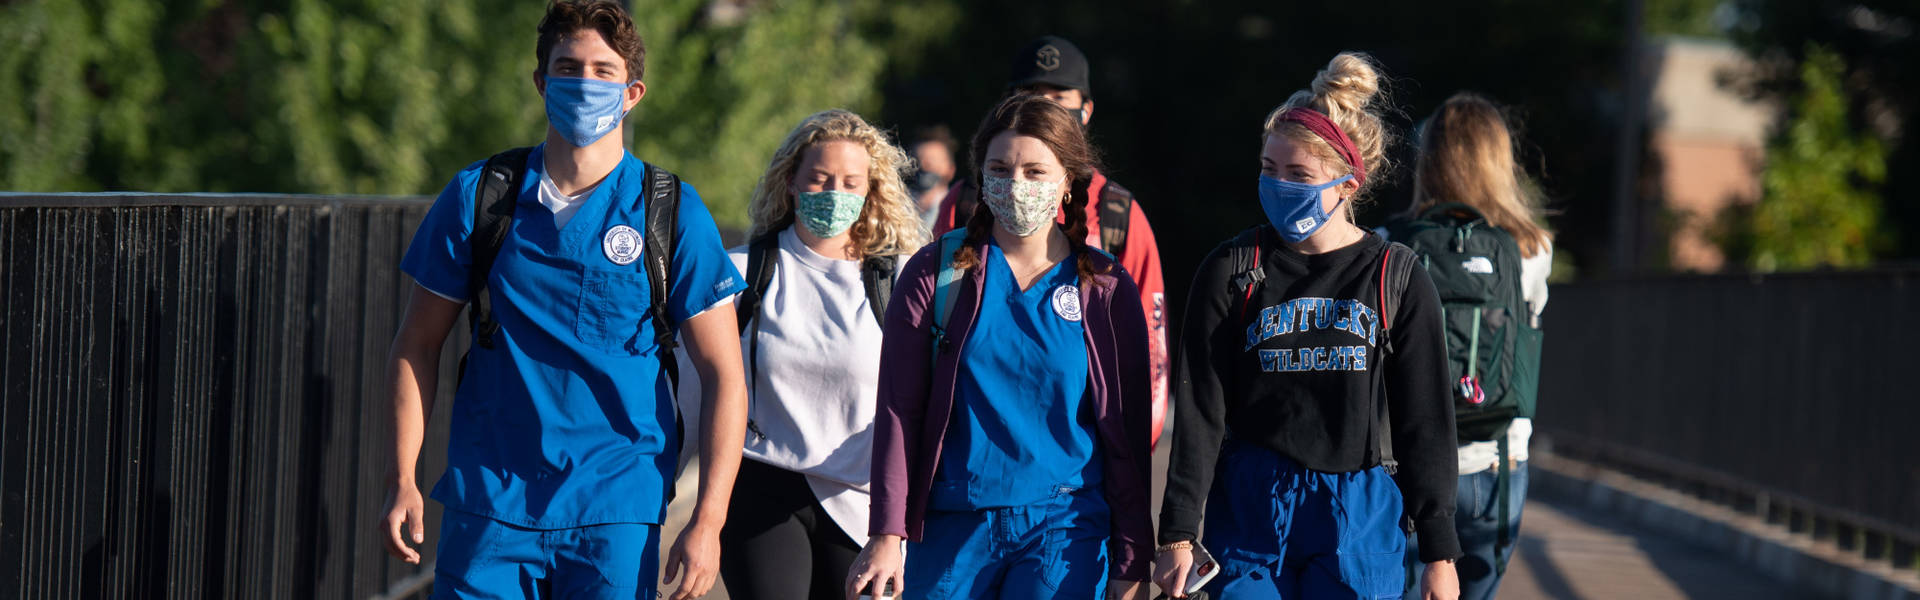 Nursing students walking across bridge during pandemic